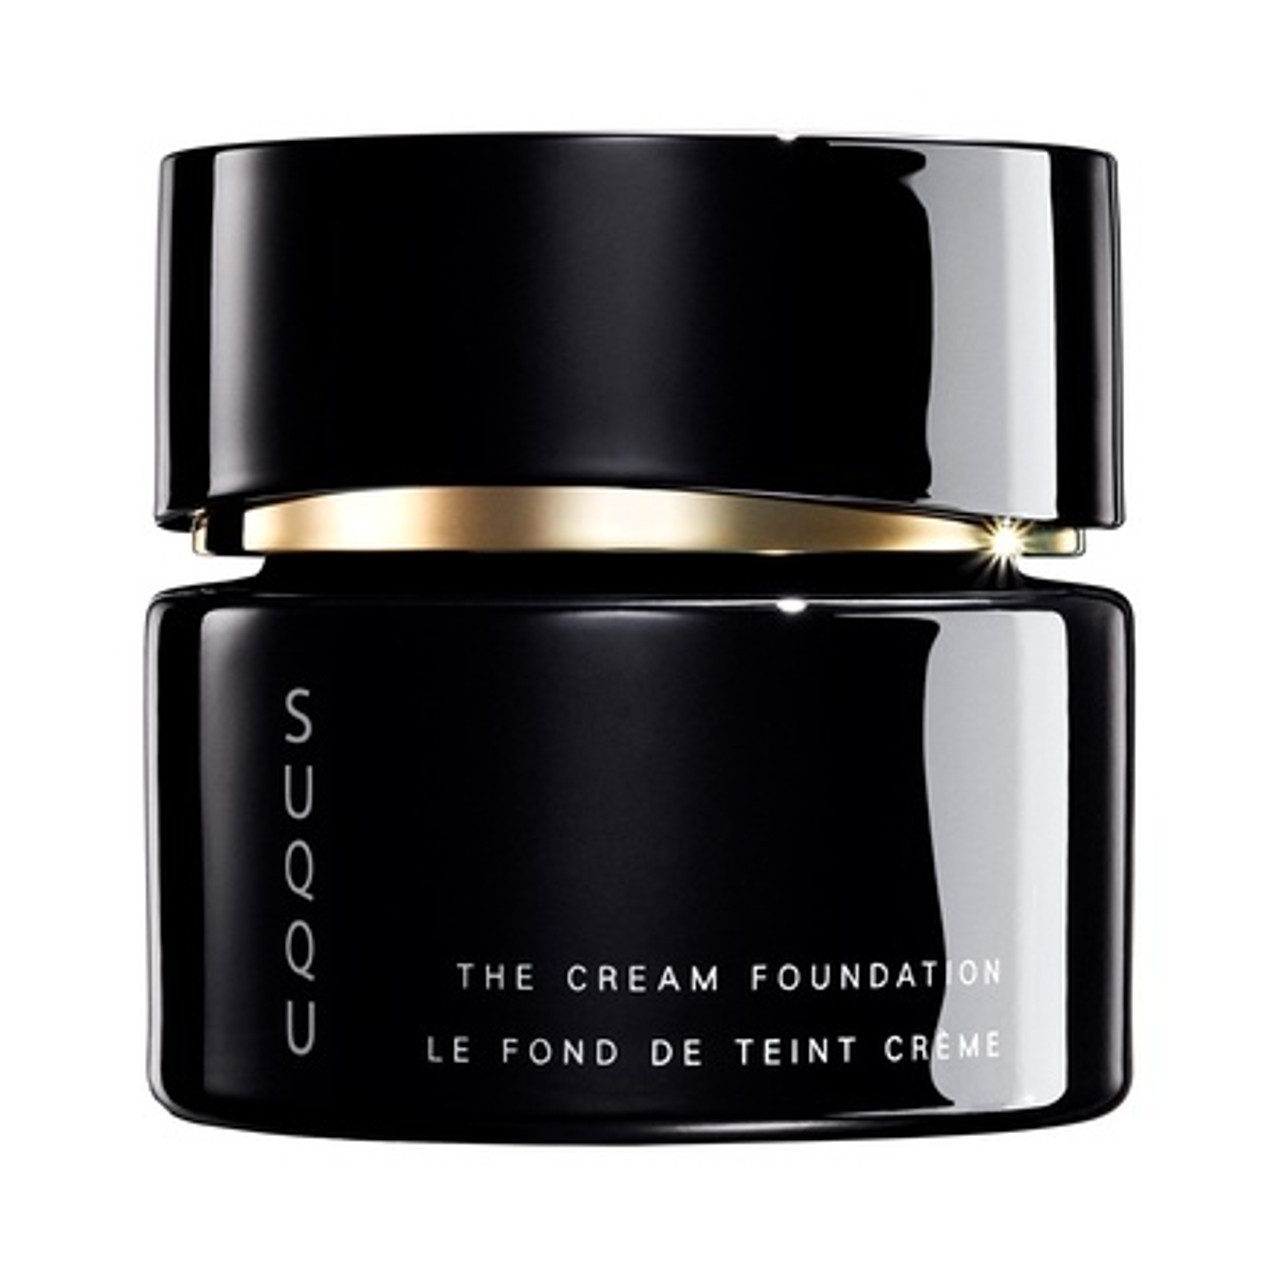 SUQQU The Cream Foundation 30g - www.BonBonCosmetics.com